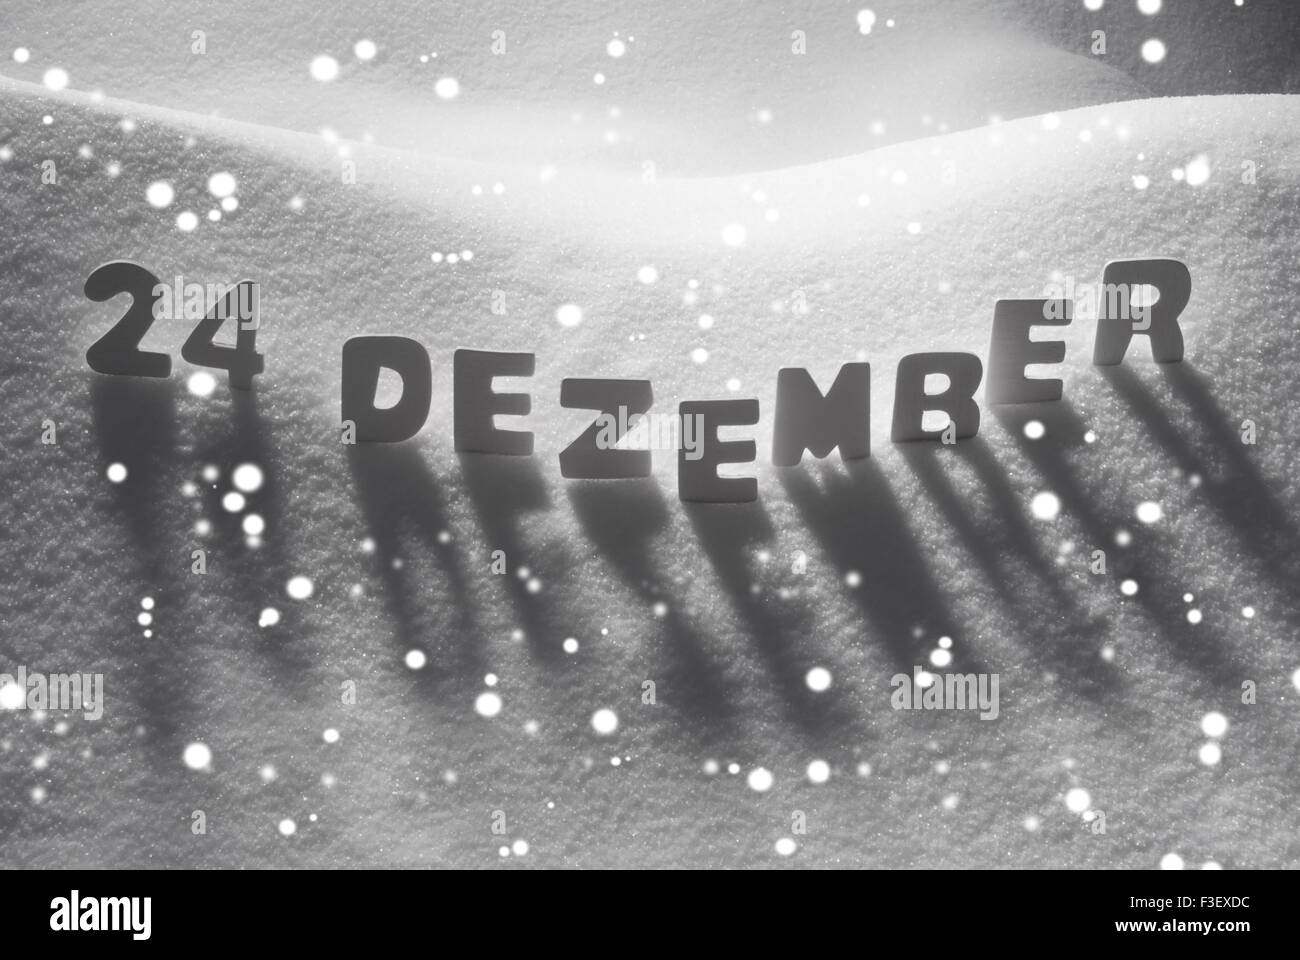 Parola bianco 24 Dezember significa 24 dicembre sulla neve, fiocchi di neve Foto Stock